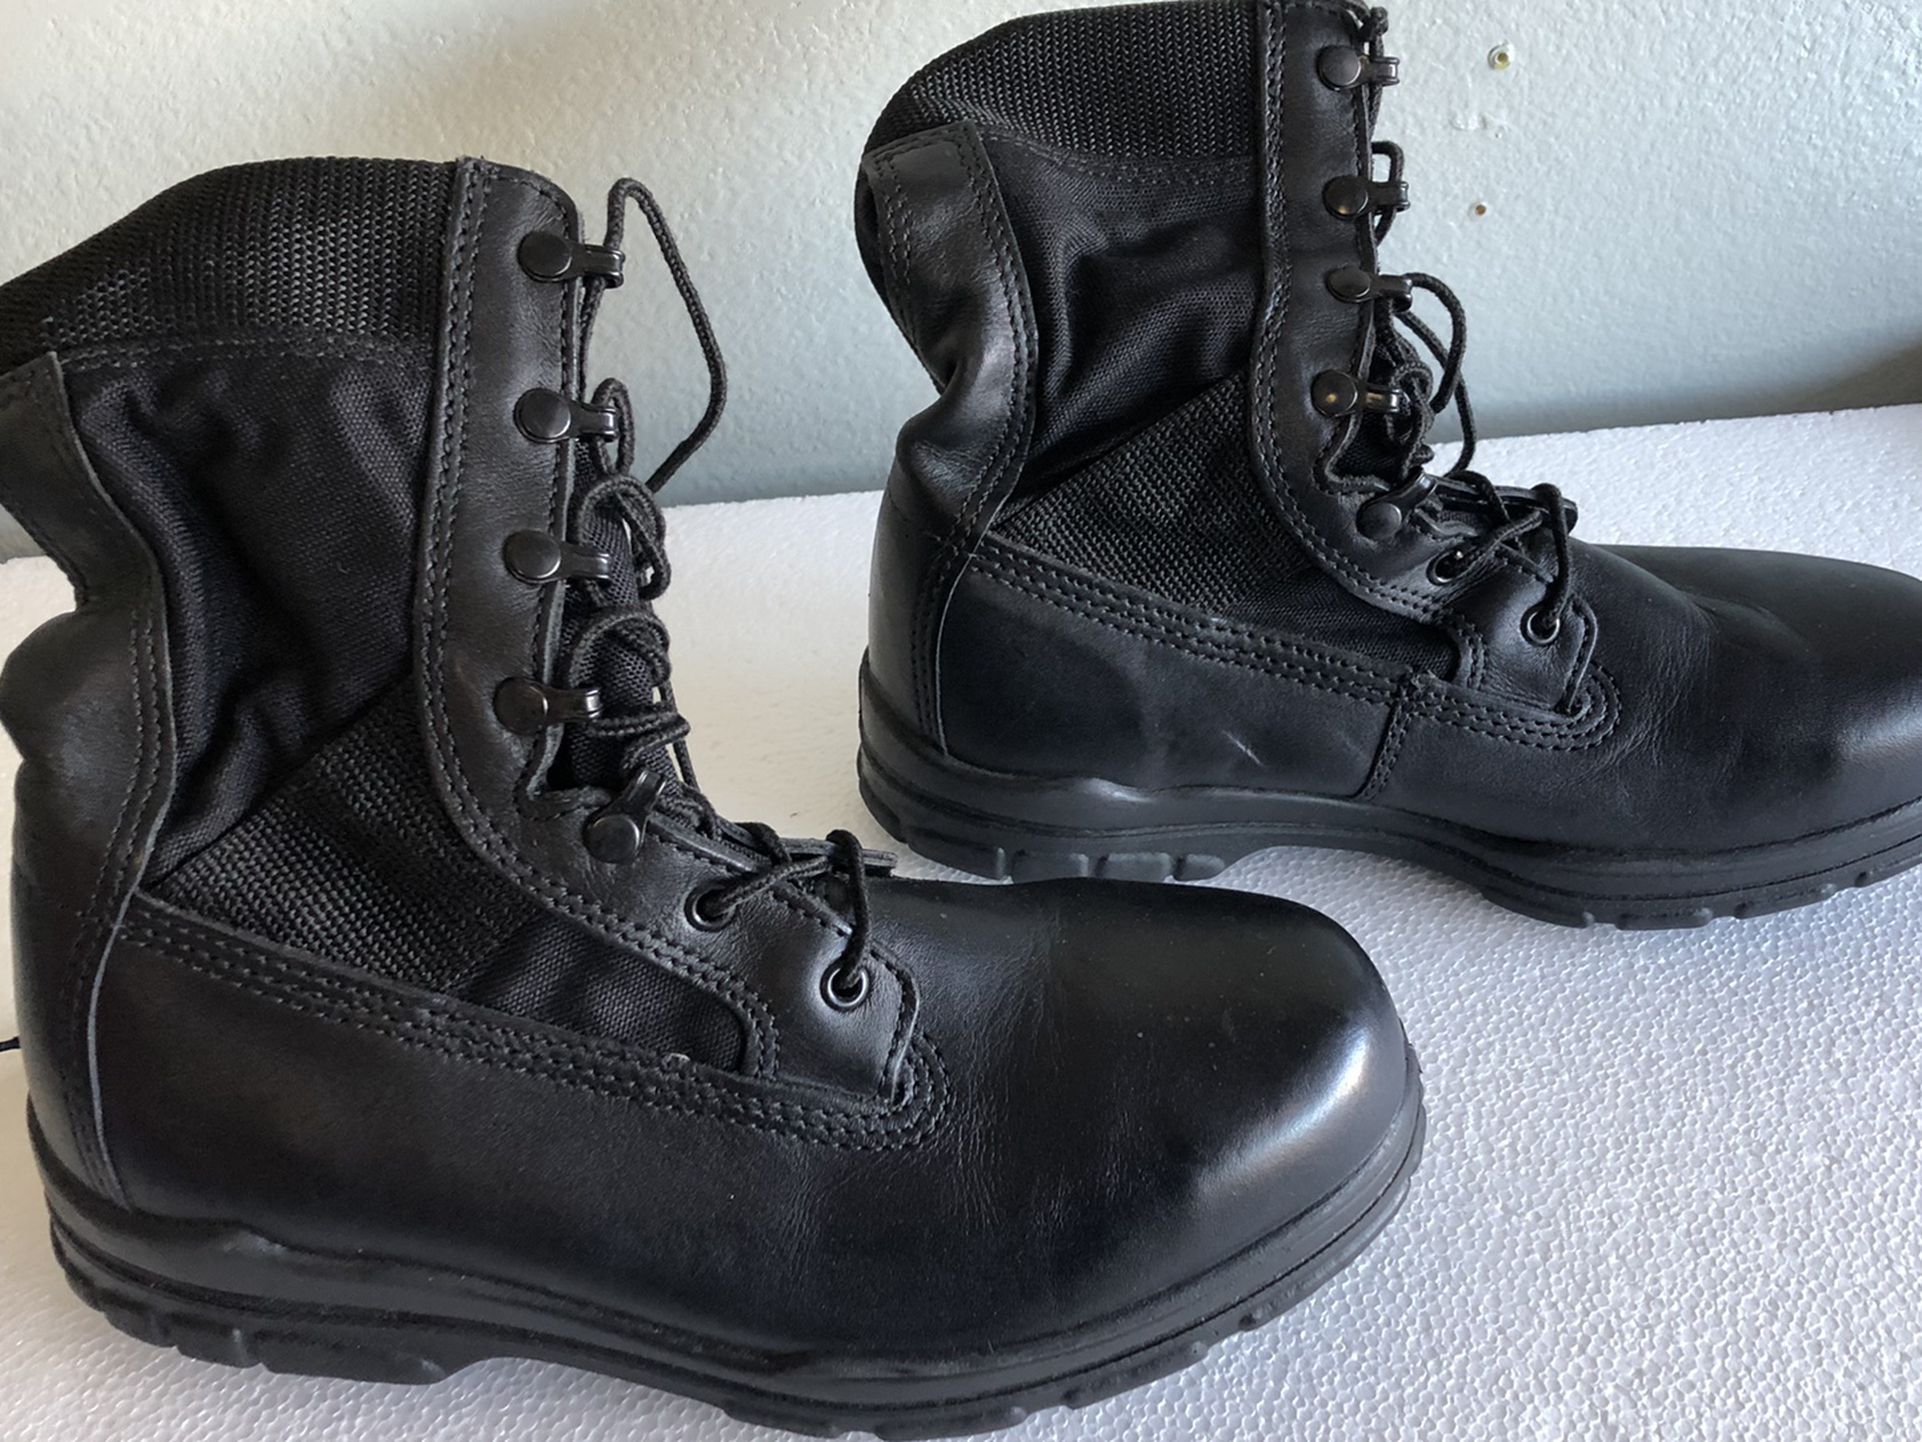 Durashocks work boots $25